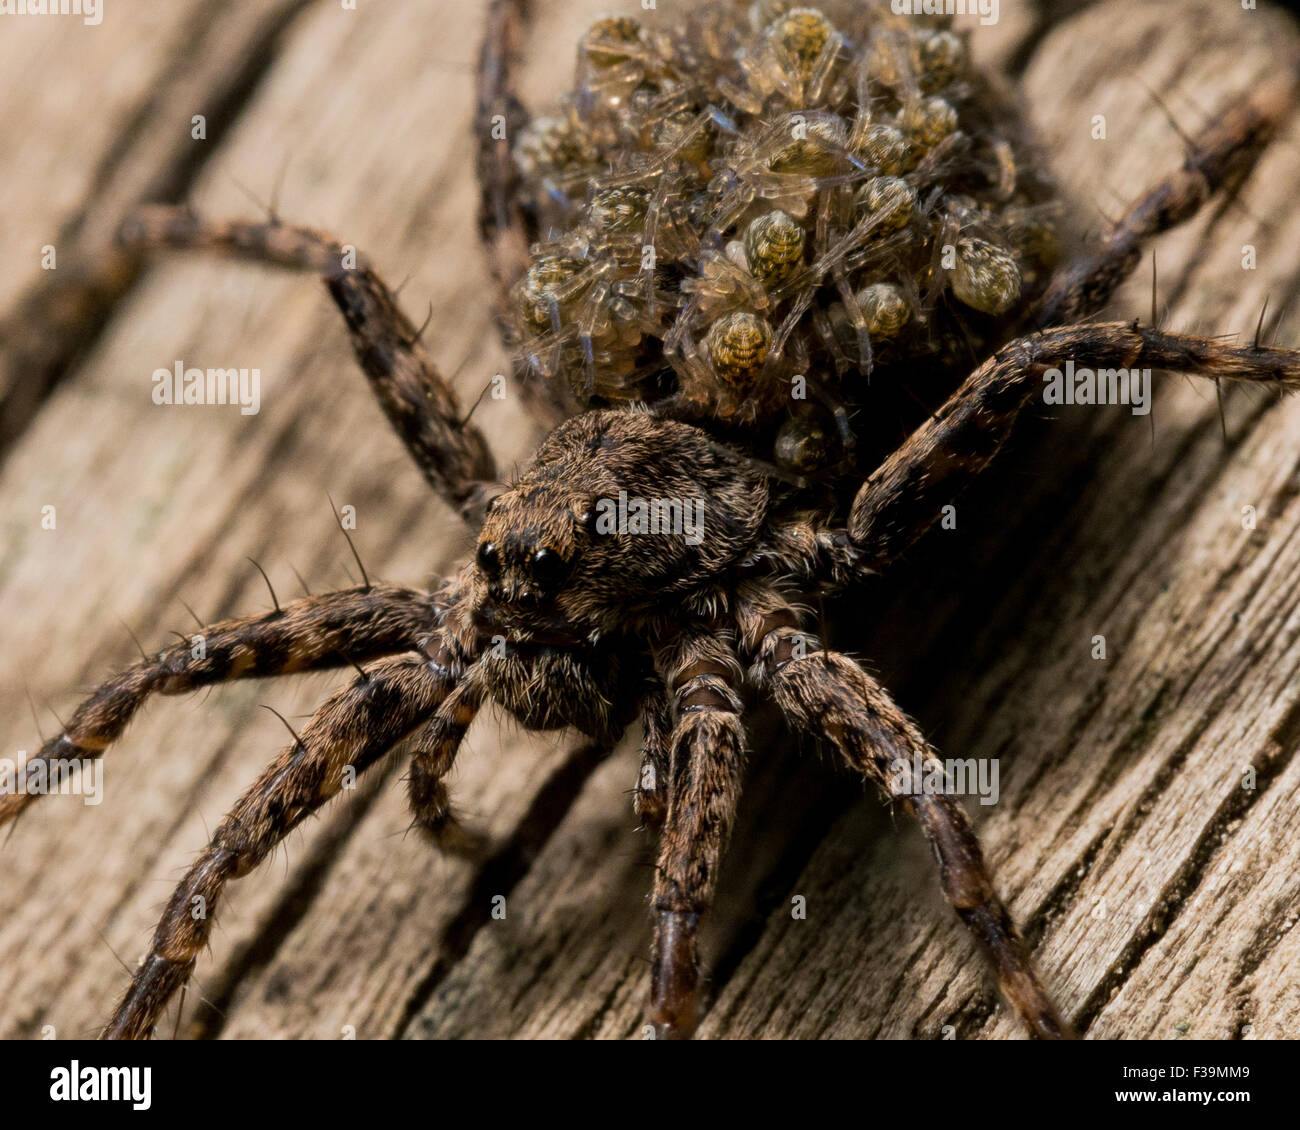 Araignée-loup mère bébé caries araignées sur son dos Banque D'Images